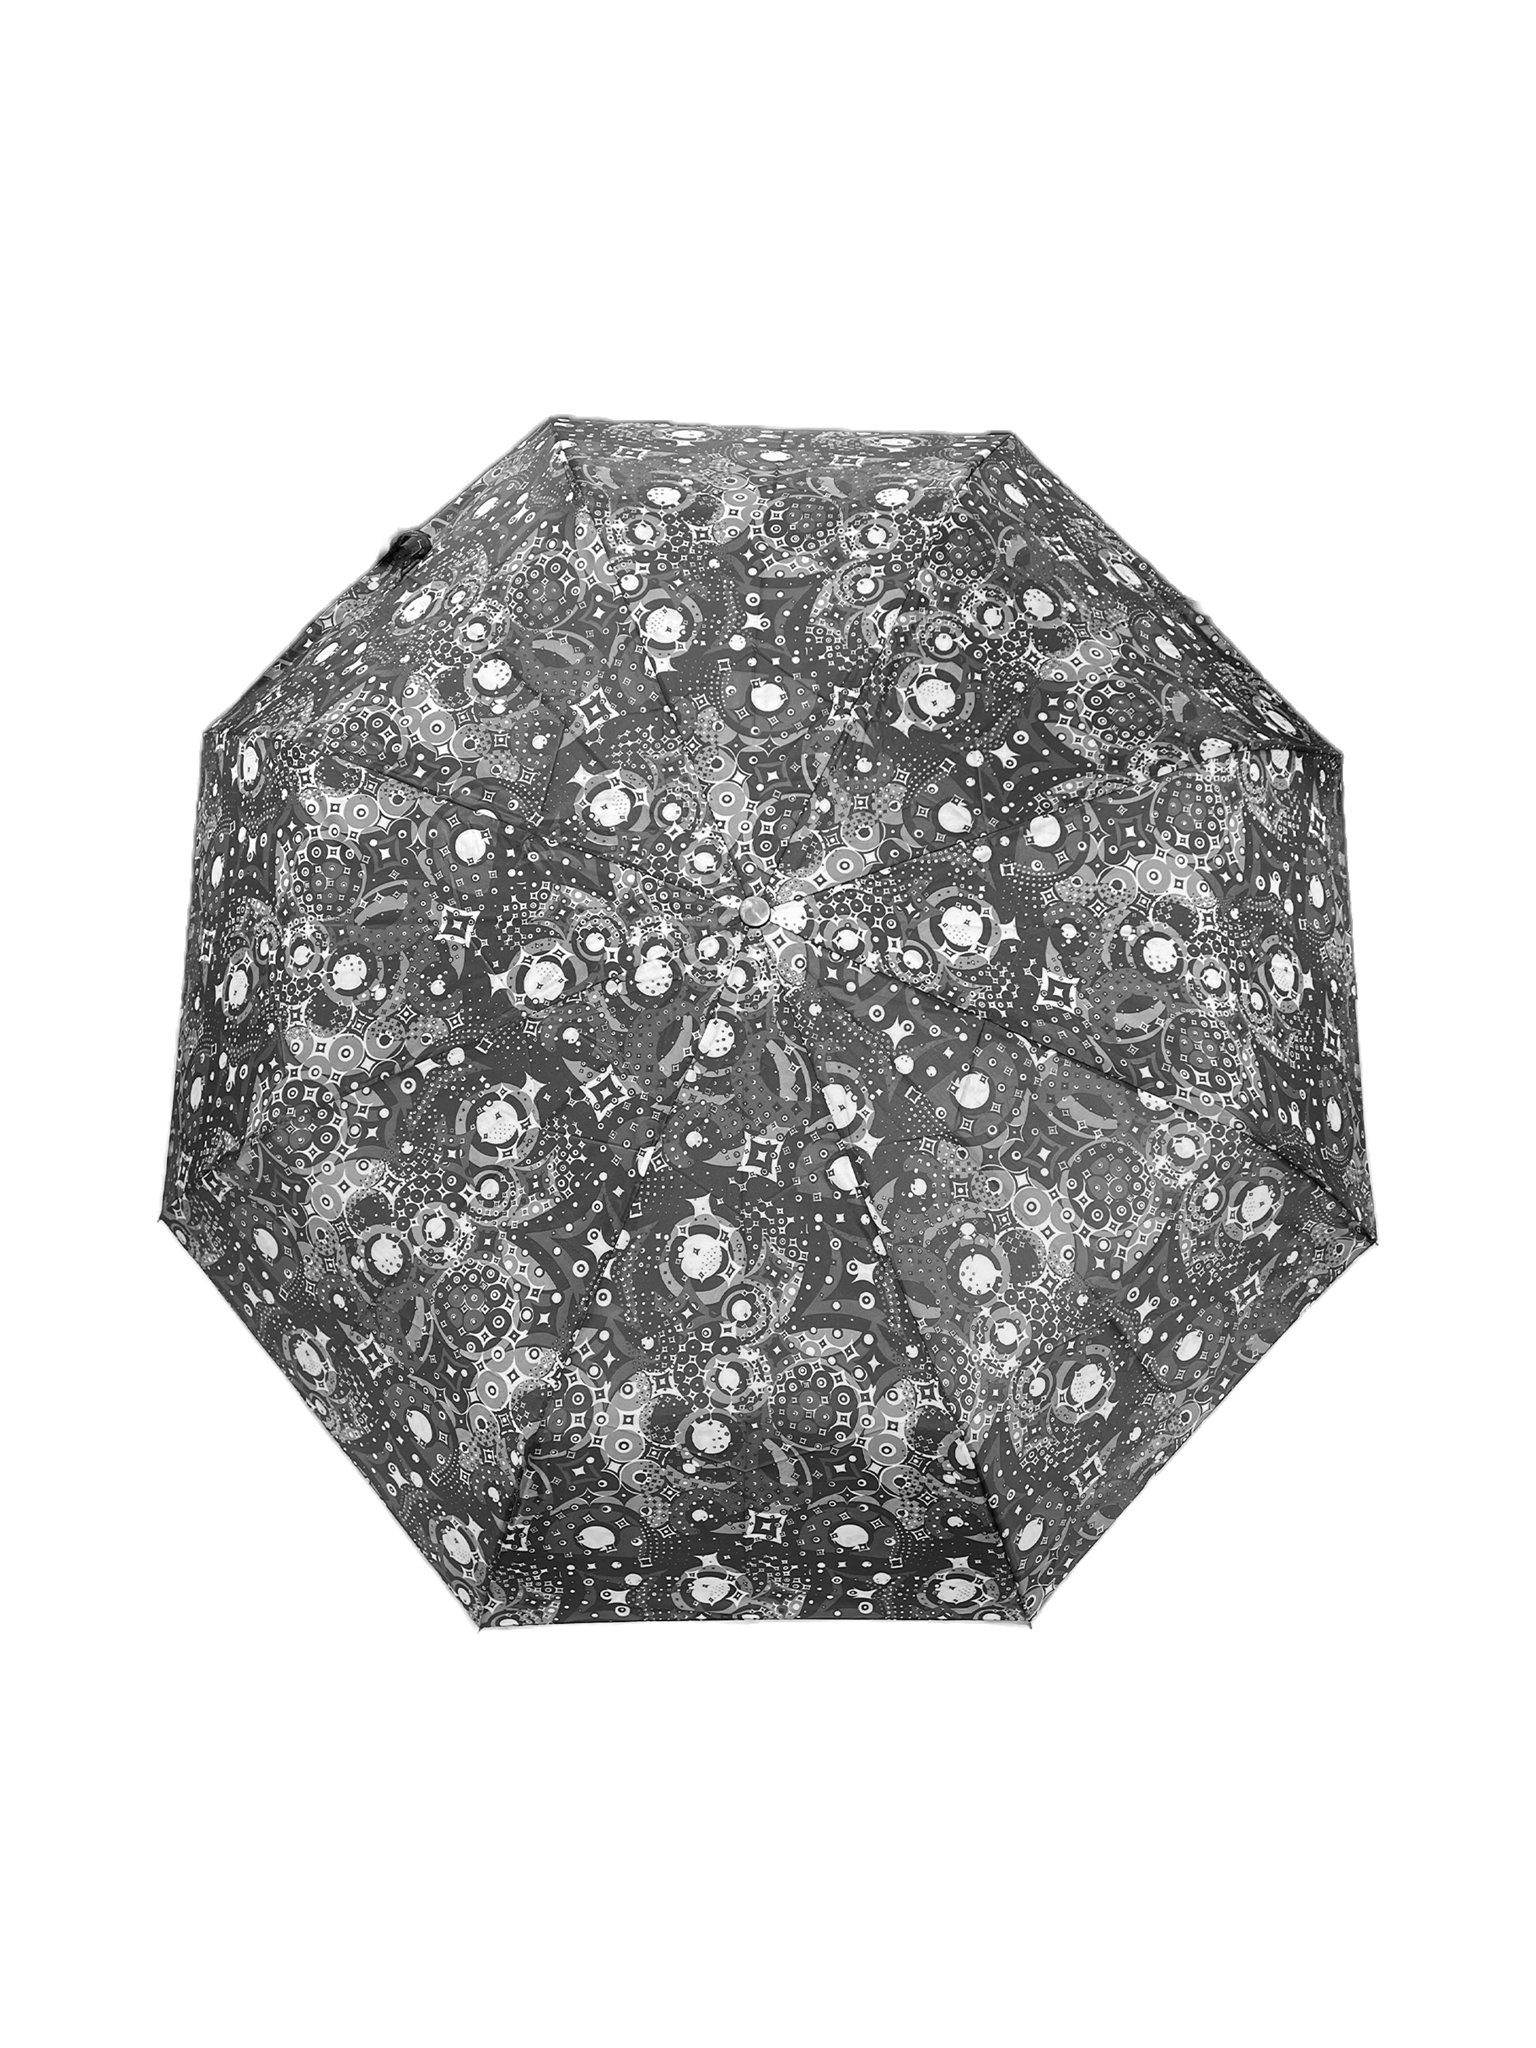 ANELY Taschenregenschirm Kleiner Regenschirm Paris Taschenschirm, Gemustert Grau 6746 in